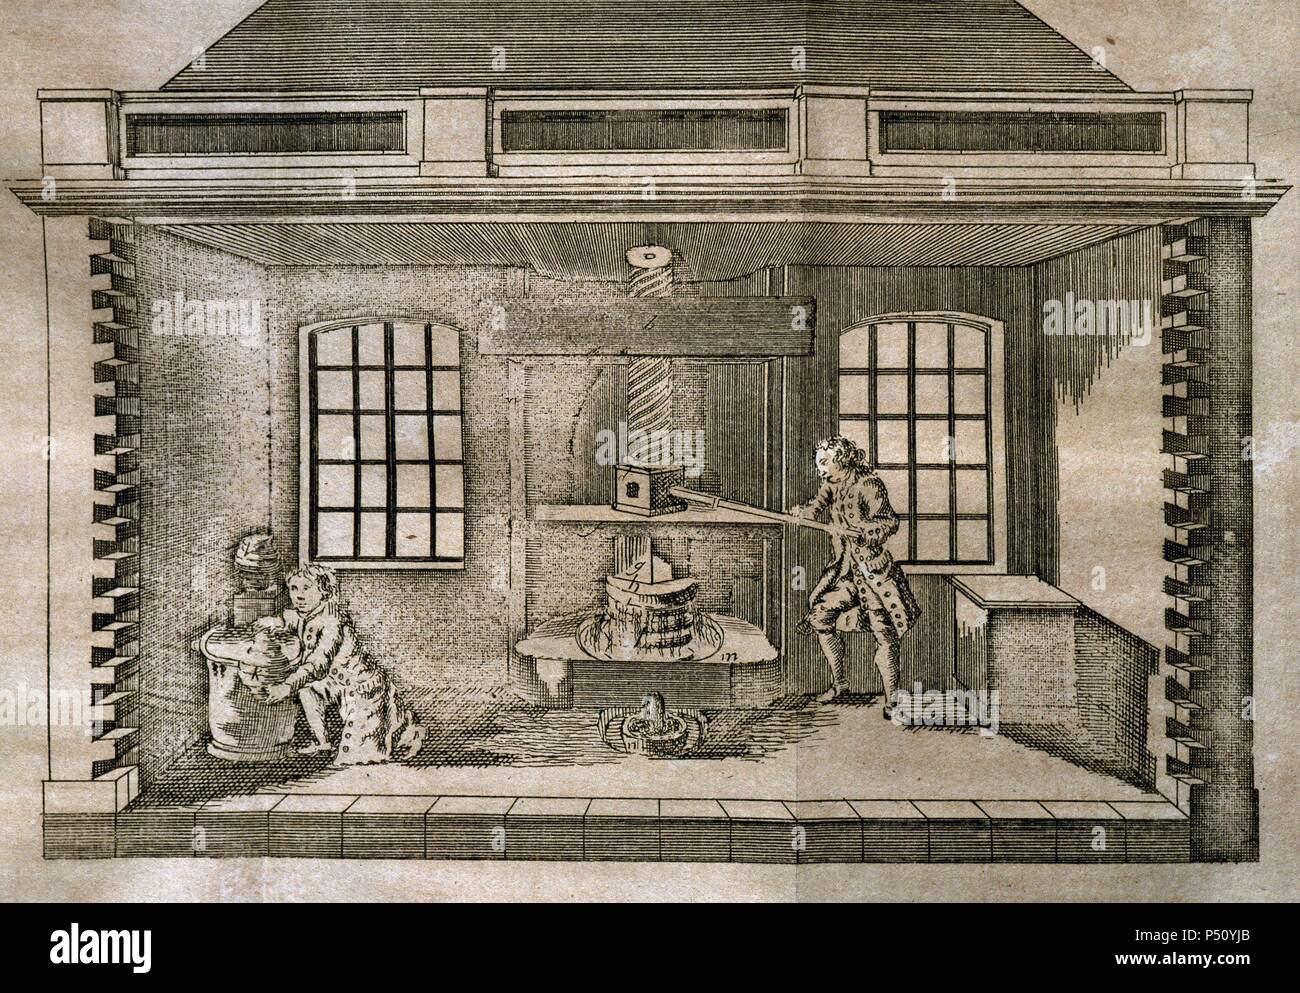 Ölpresse. 18. Jahrhundert Gravur. Stockfoto